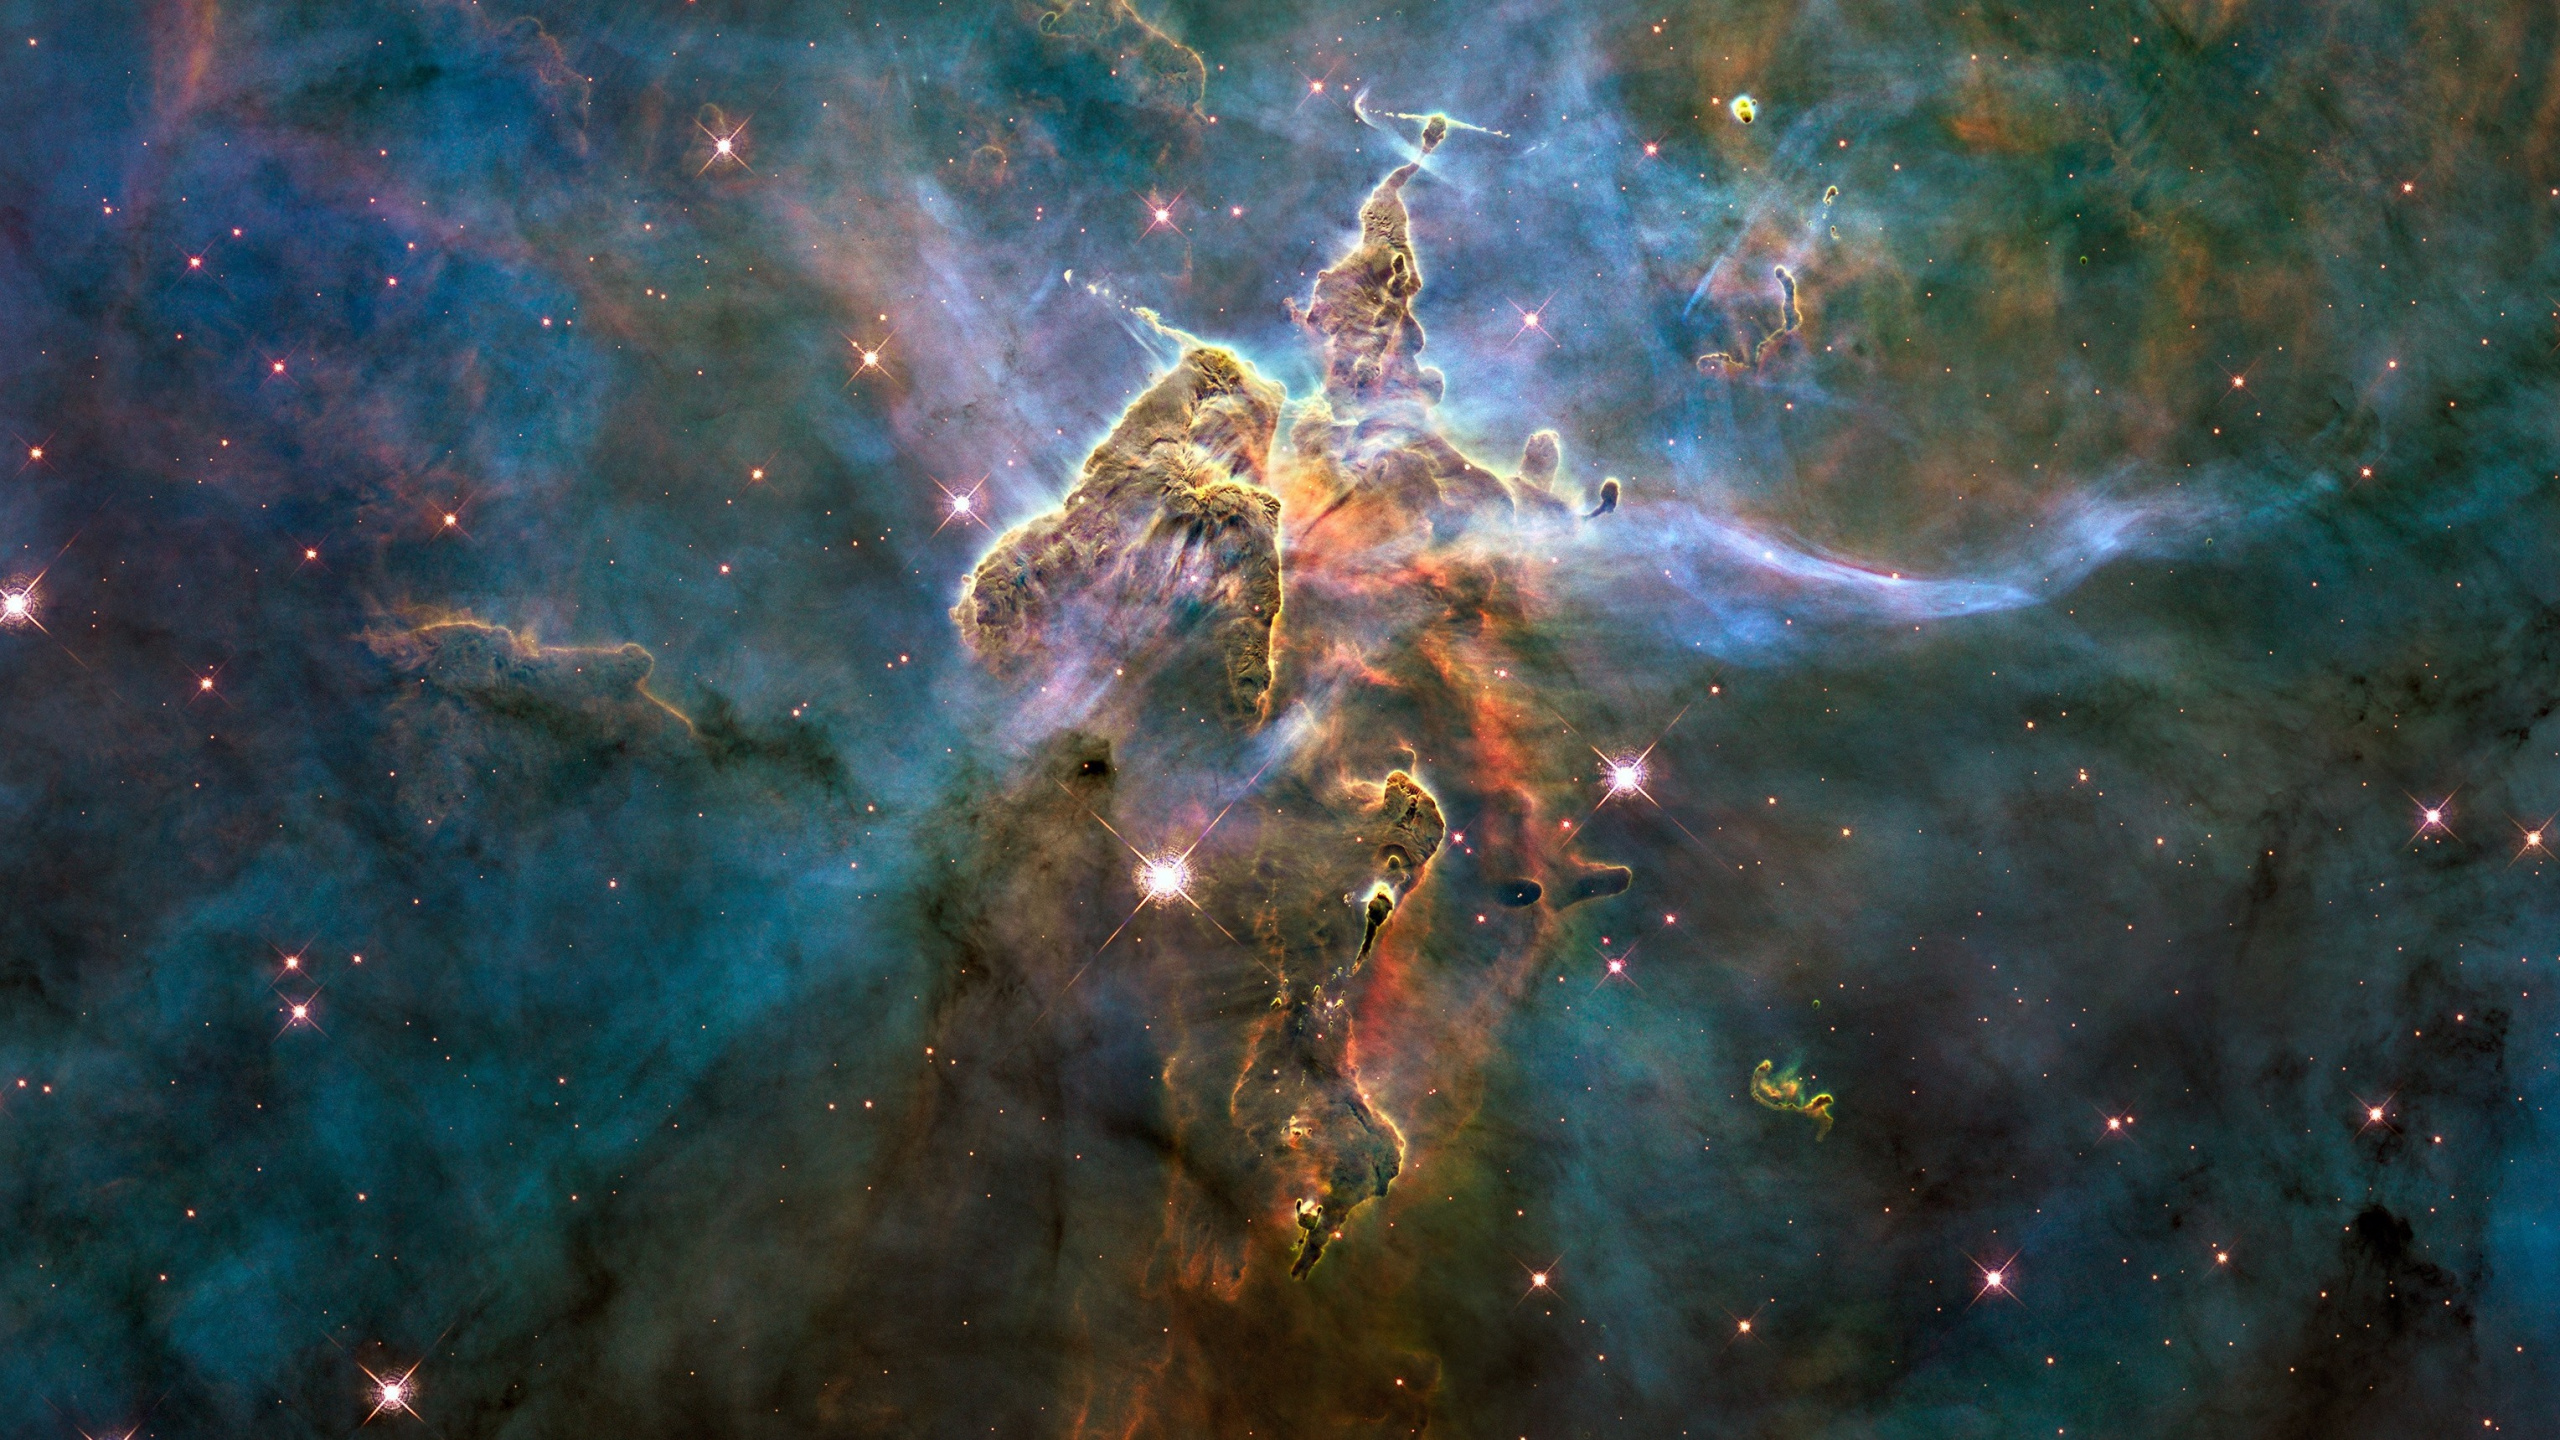 哈勃太空望远镜, Carina星云, 天文学, 宇宙, 天文学对象 壁纸 2560x1440 允许